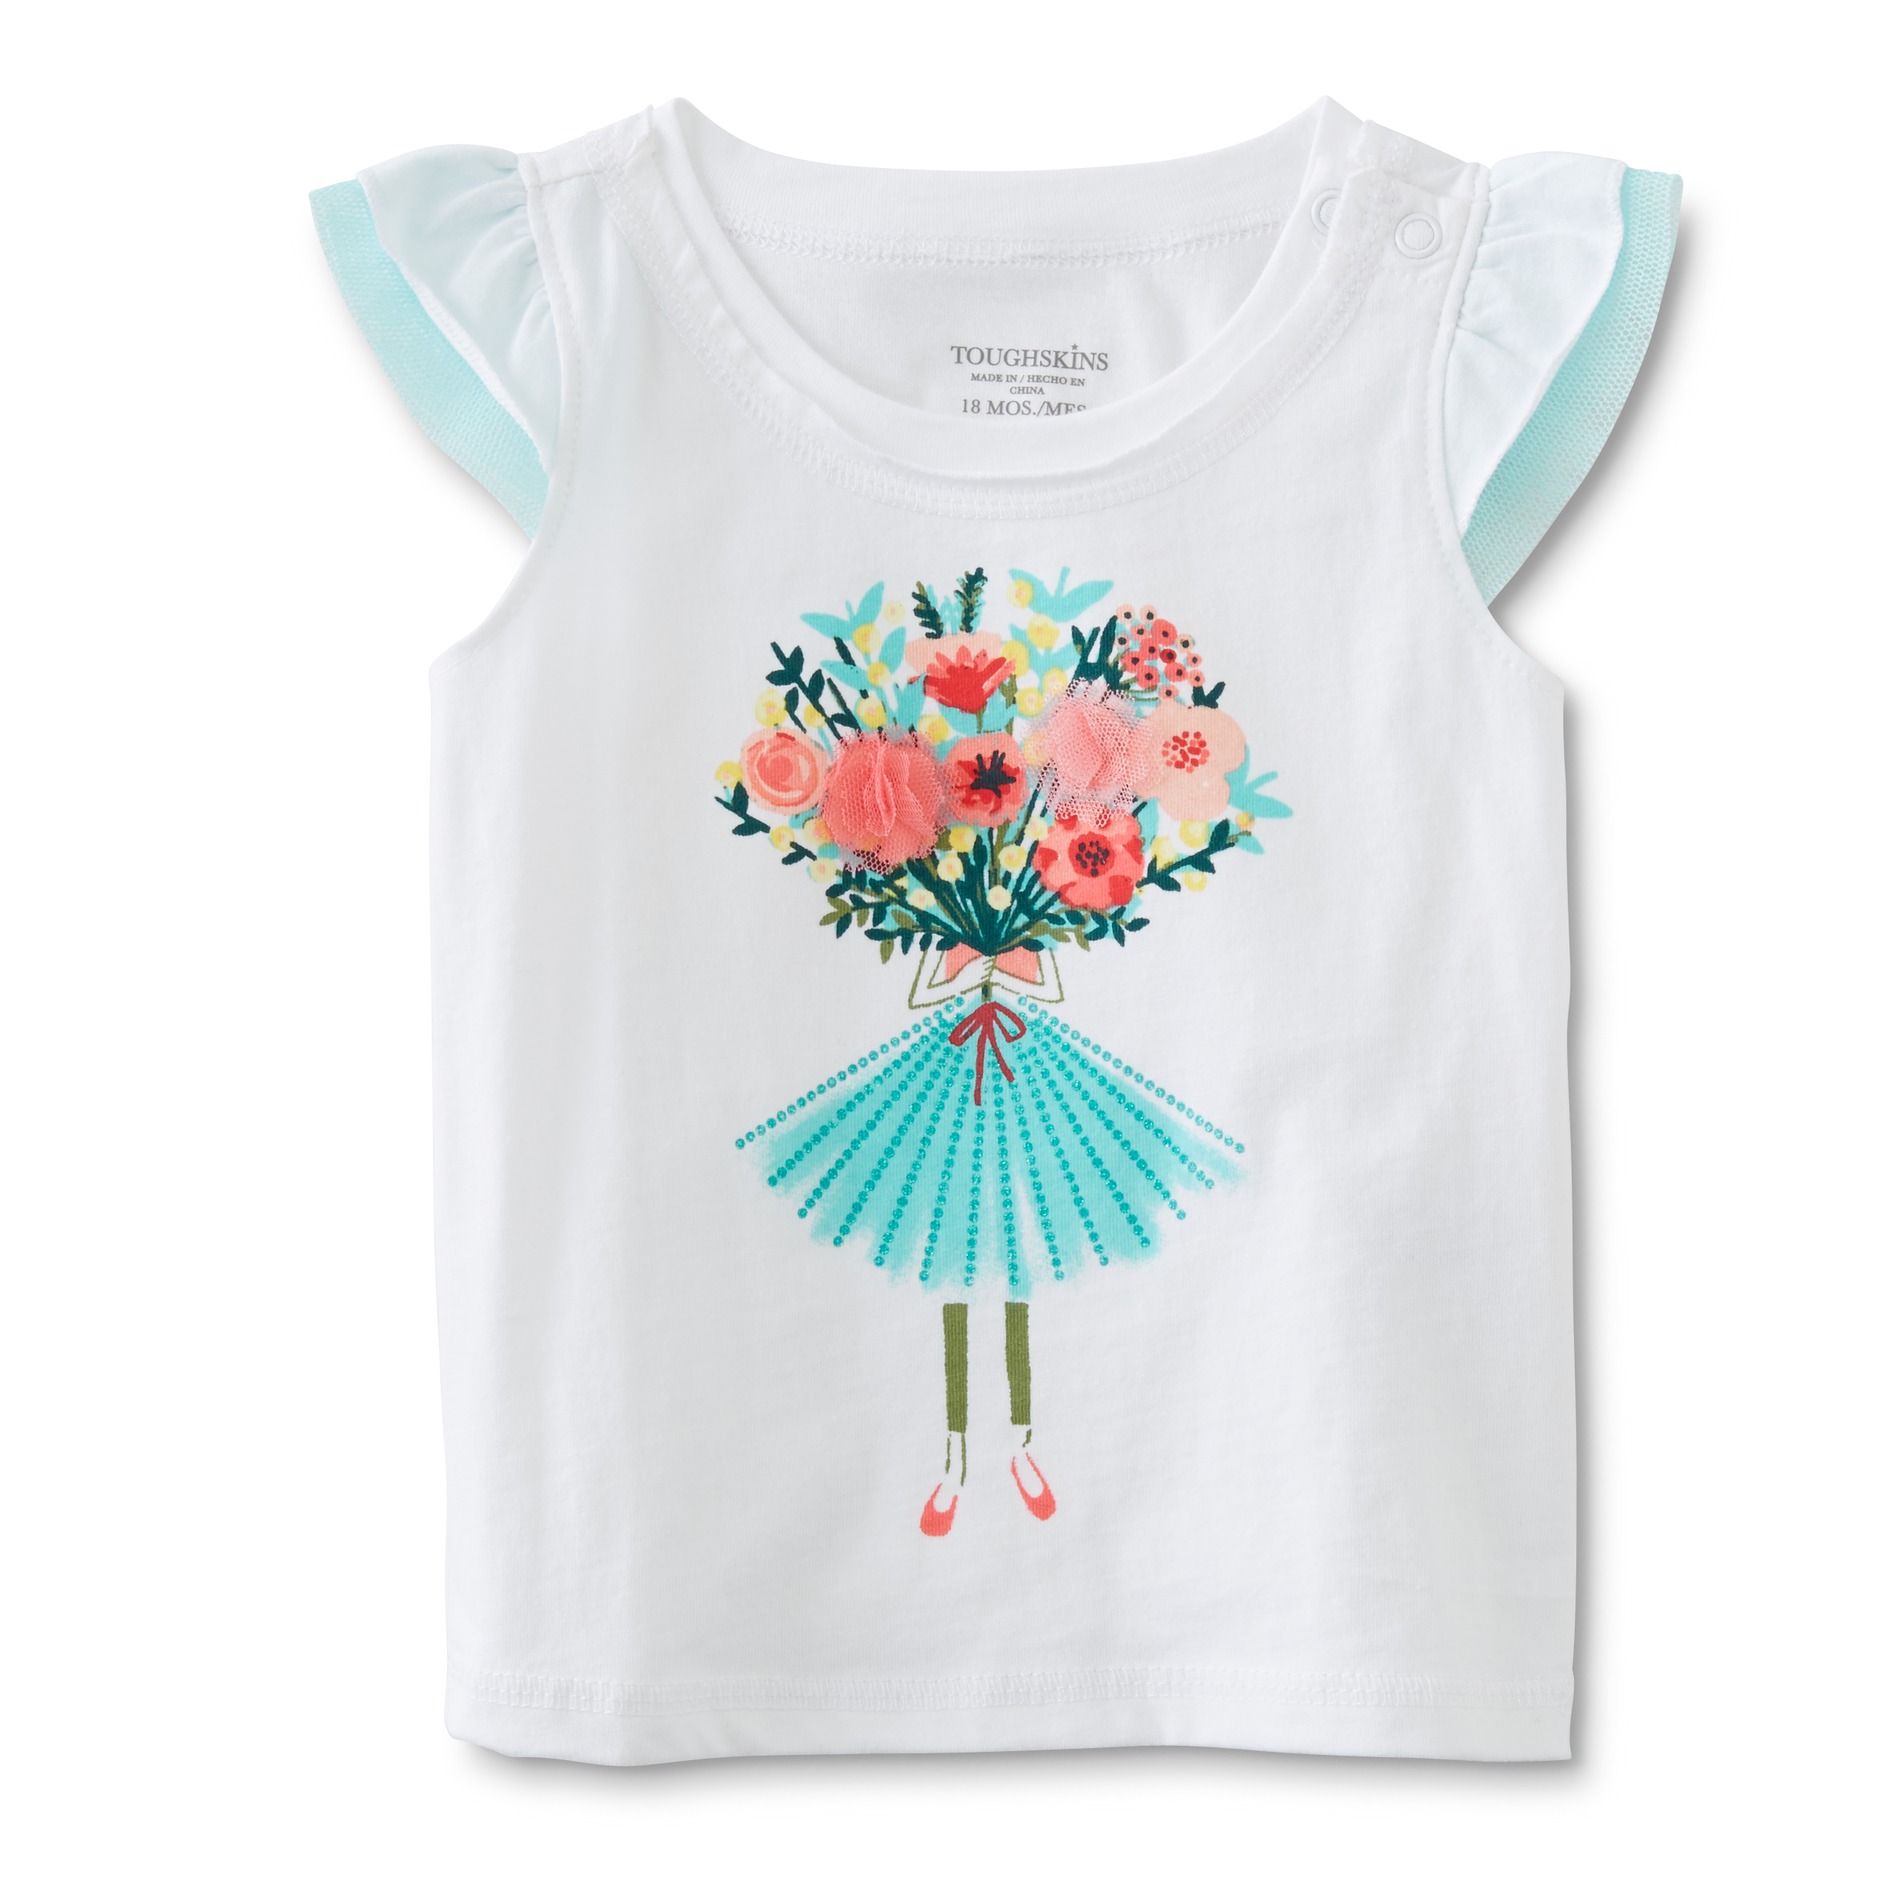 Toughskins Infant & Toddler Girl's Flutter Sleeve Top - Floral